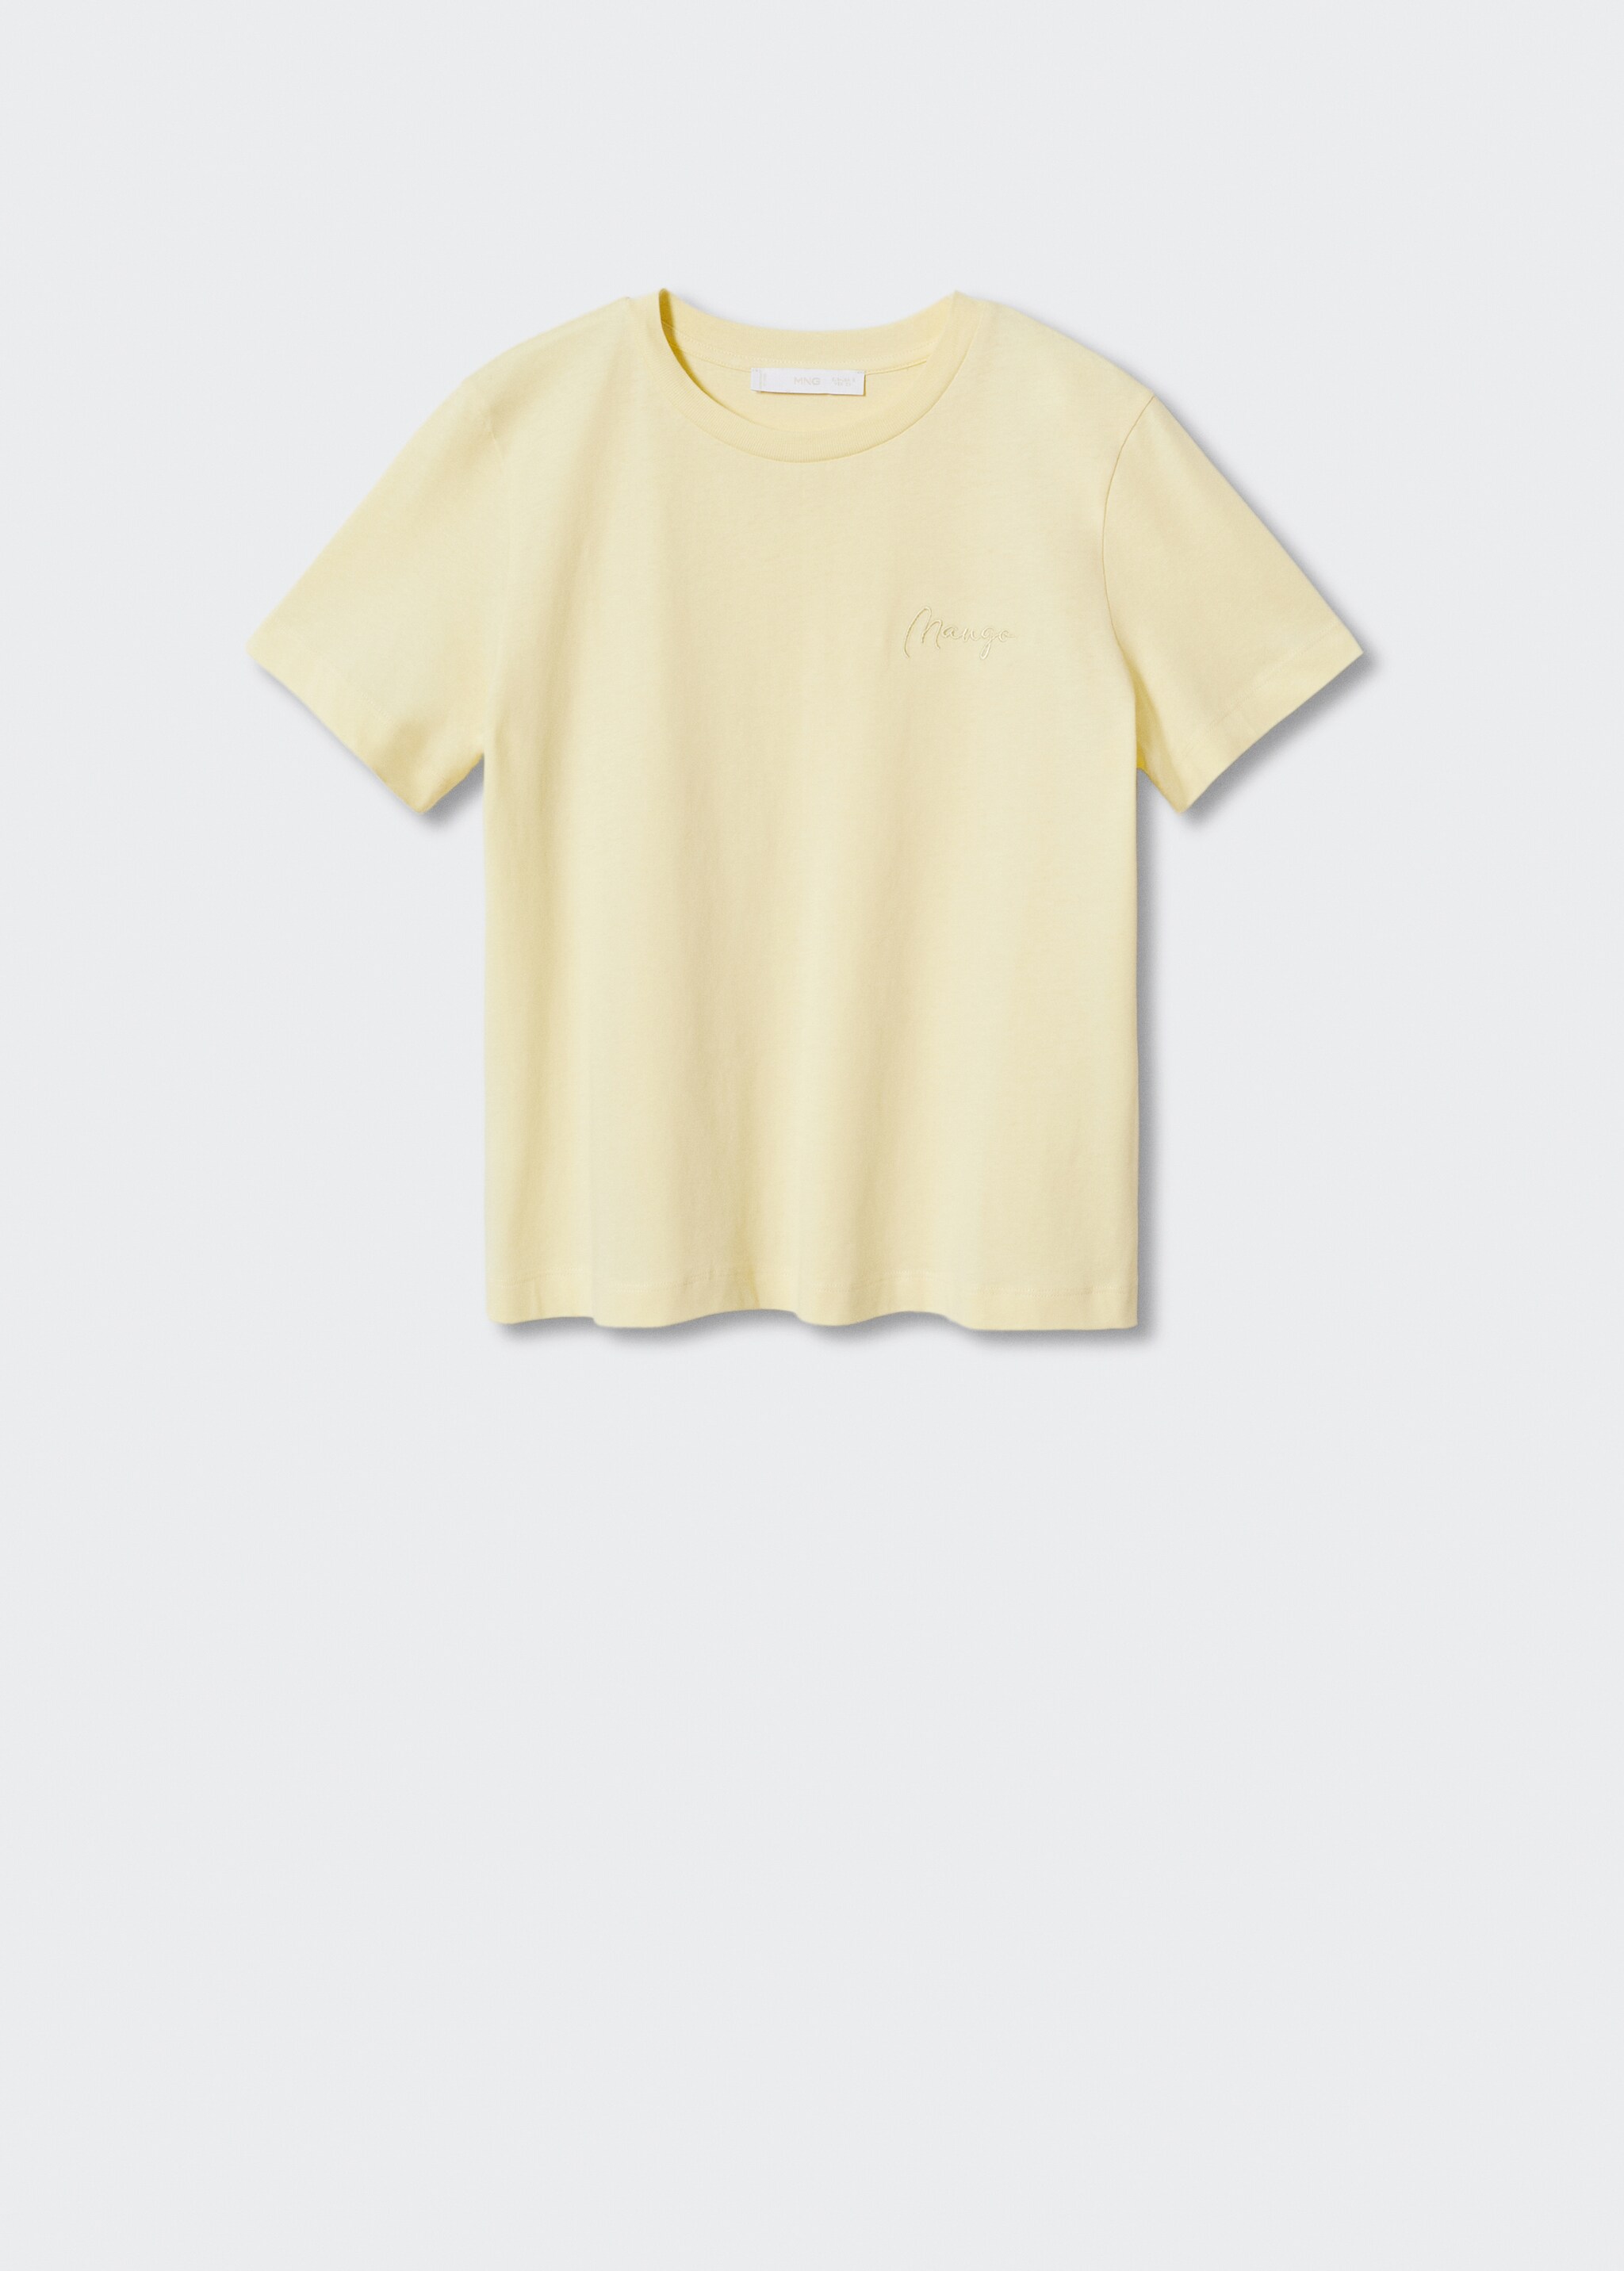 Camiseta algodón cuello redondo - Artículo sin modelo